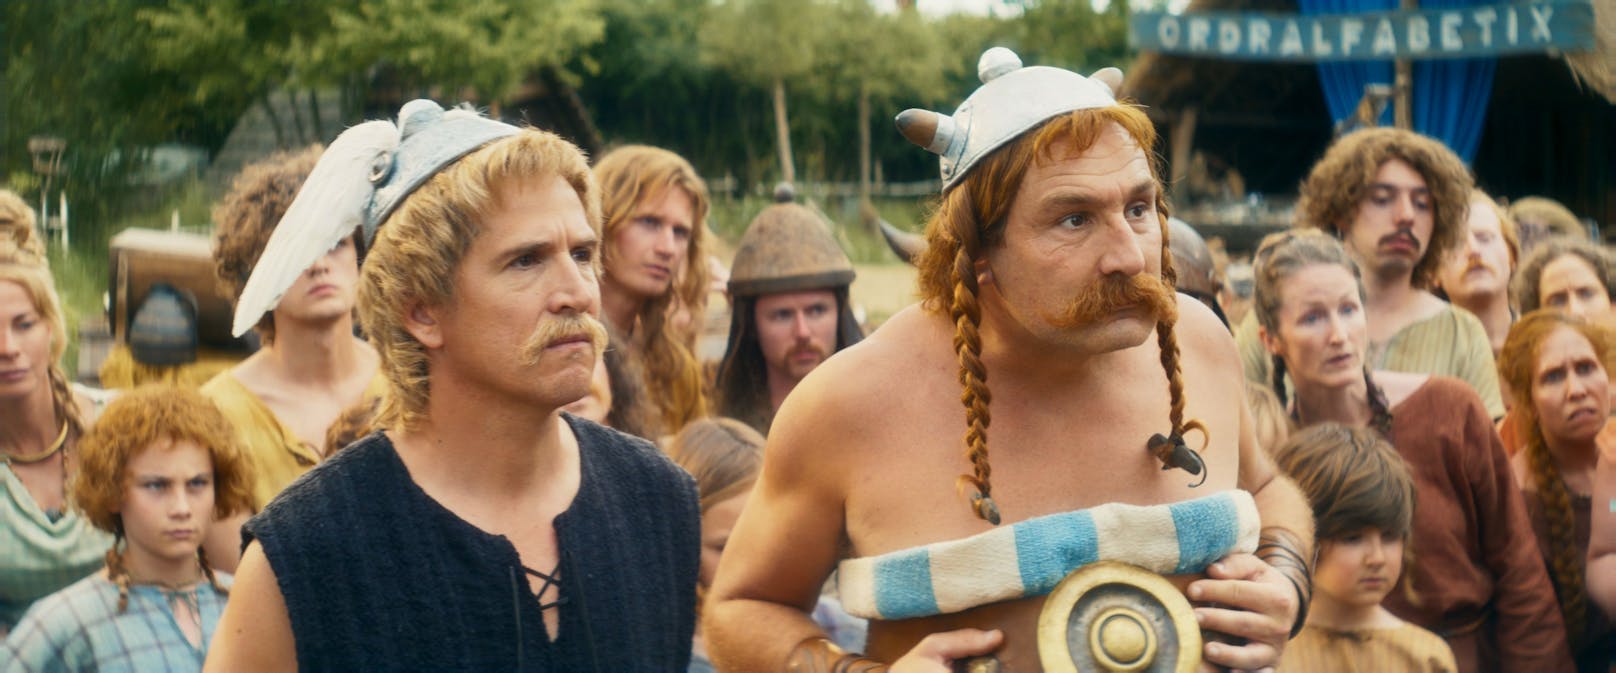 Szene aus dem neuen Kino-Film "Asterix & Obelix im Reich der Mitte"